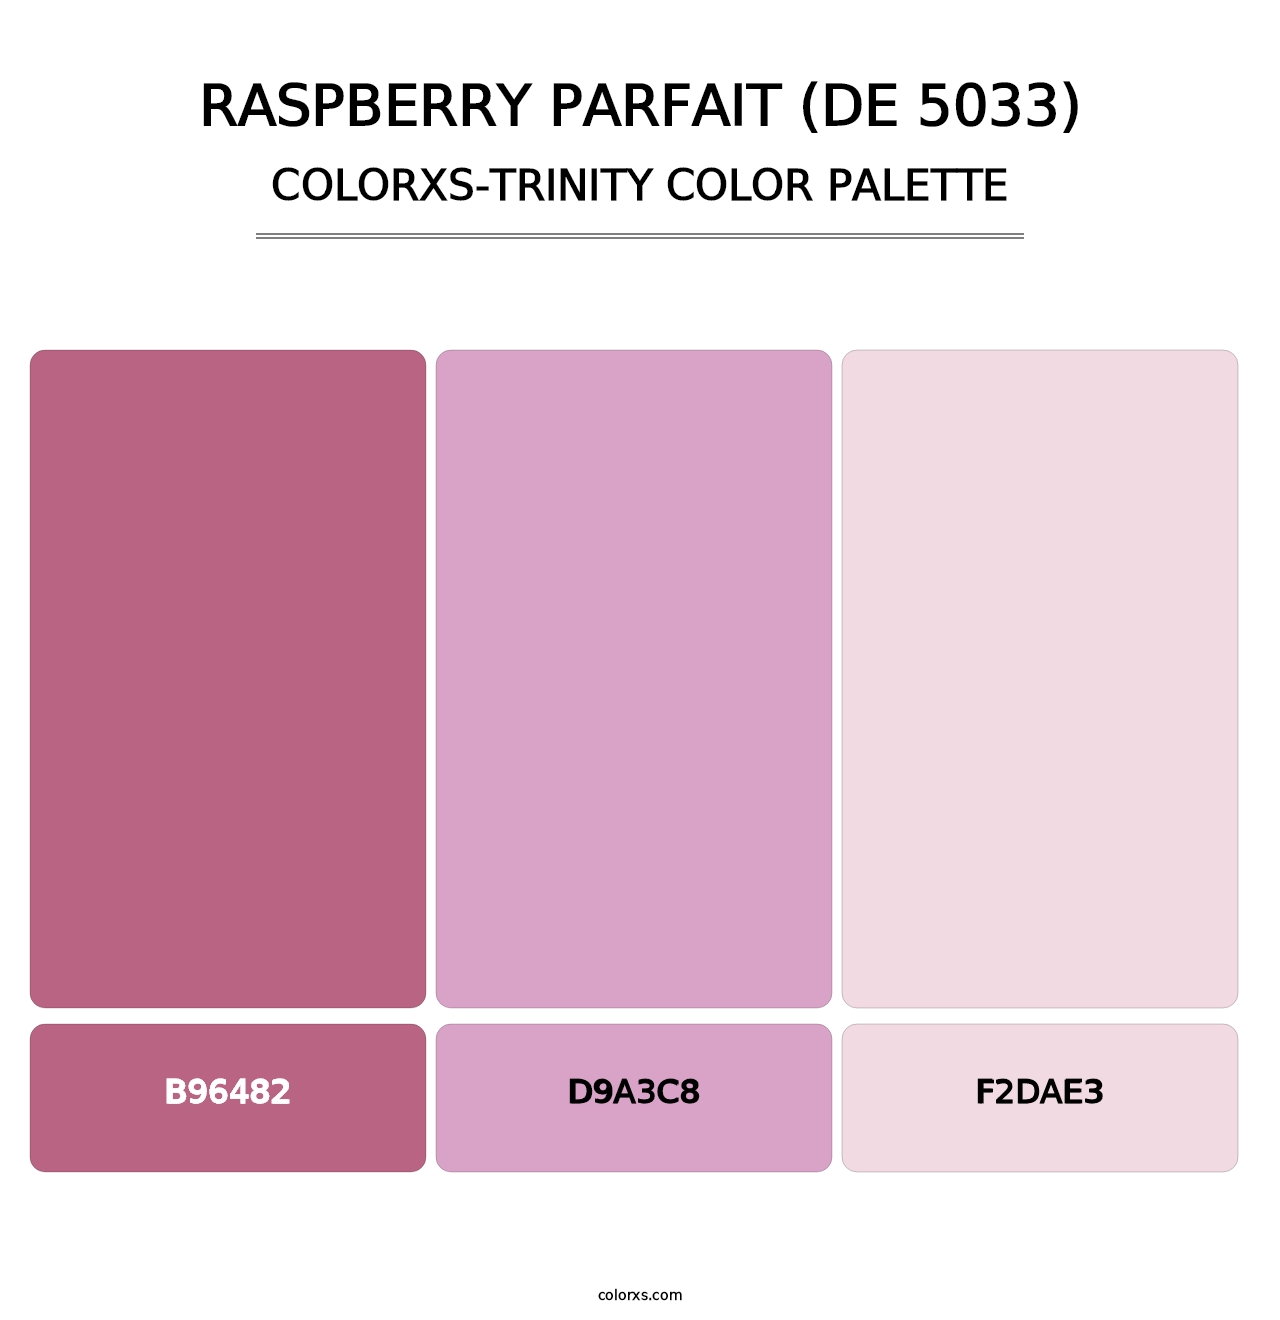 Raspberry Parfait (DE 5033) - Colorxs Trinity Palette